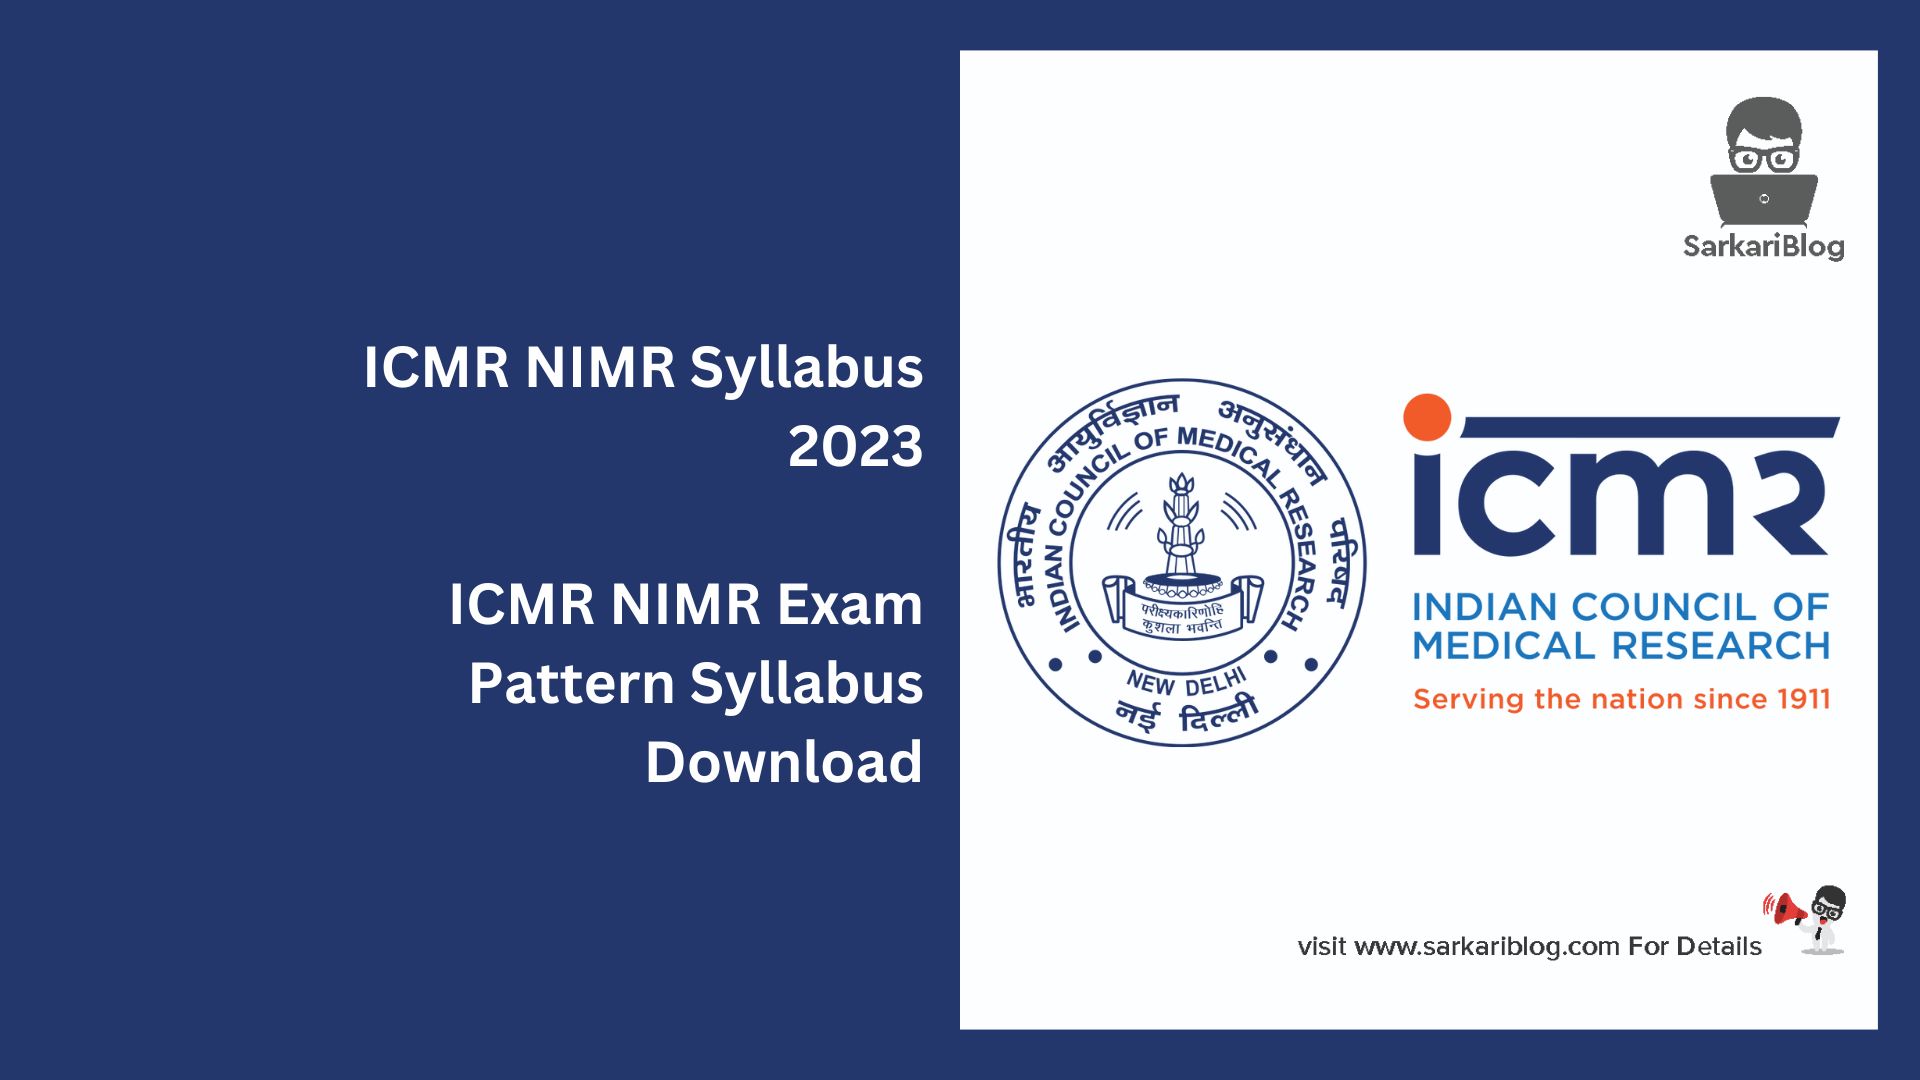 ICMR NIMR Syllabus 2023